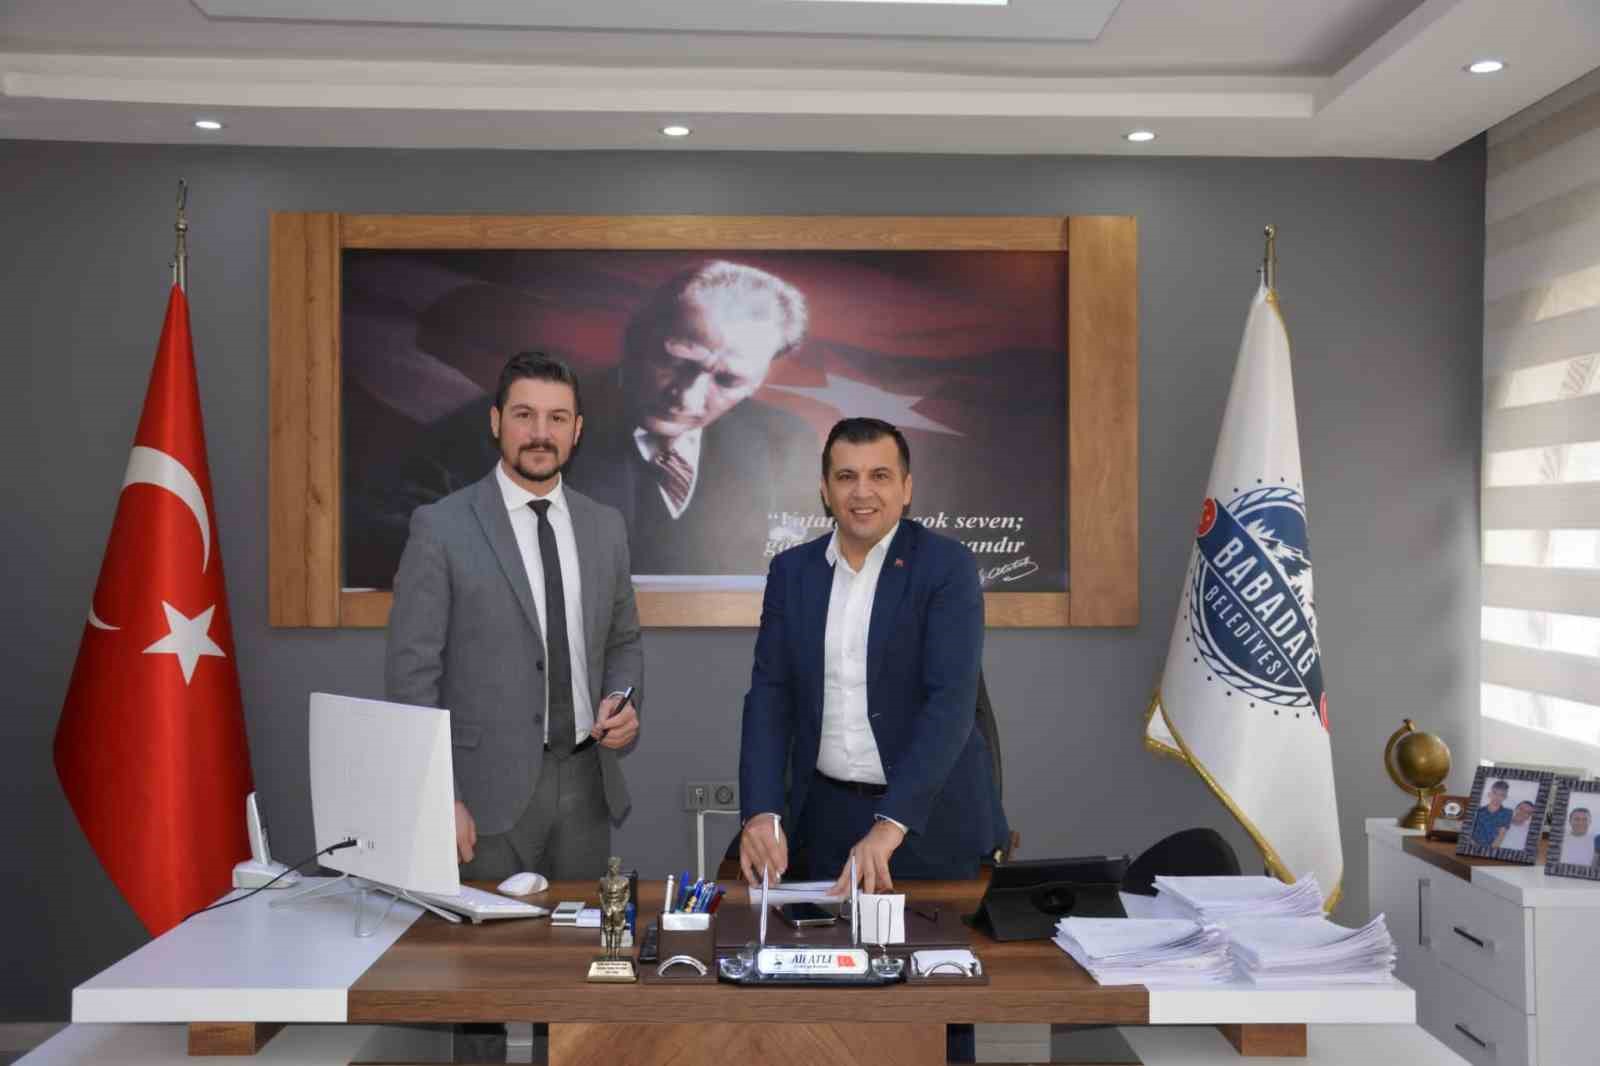 Babadağ Belediyesi, sağlık alanında yeni bir protokol uygulaması başlattı.